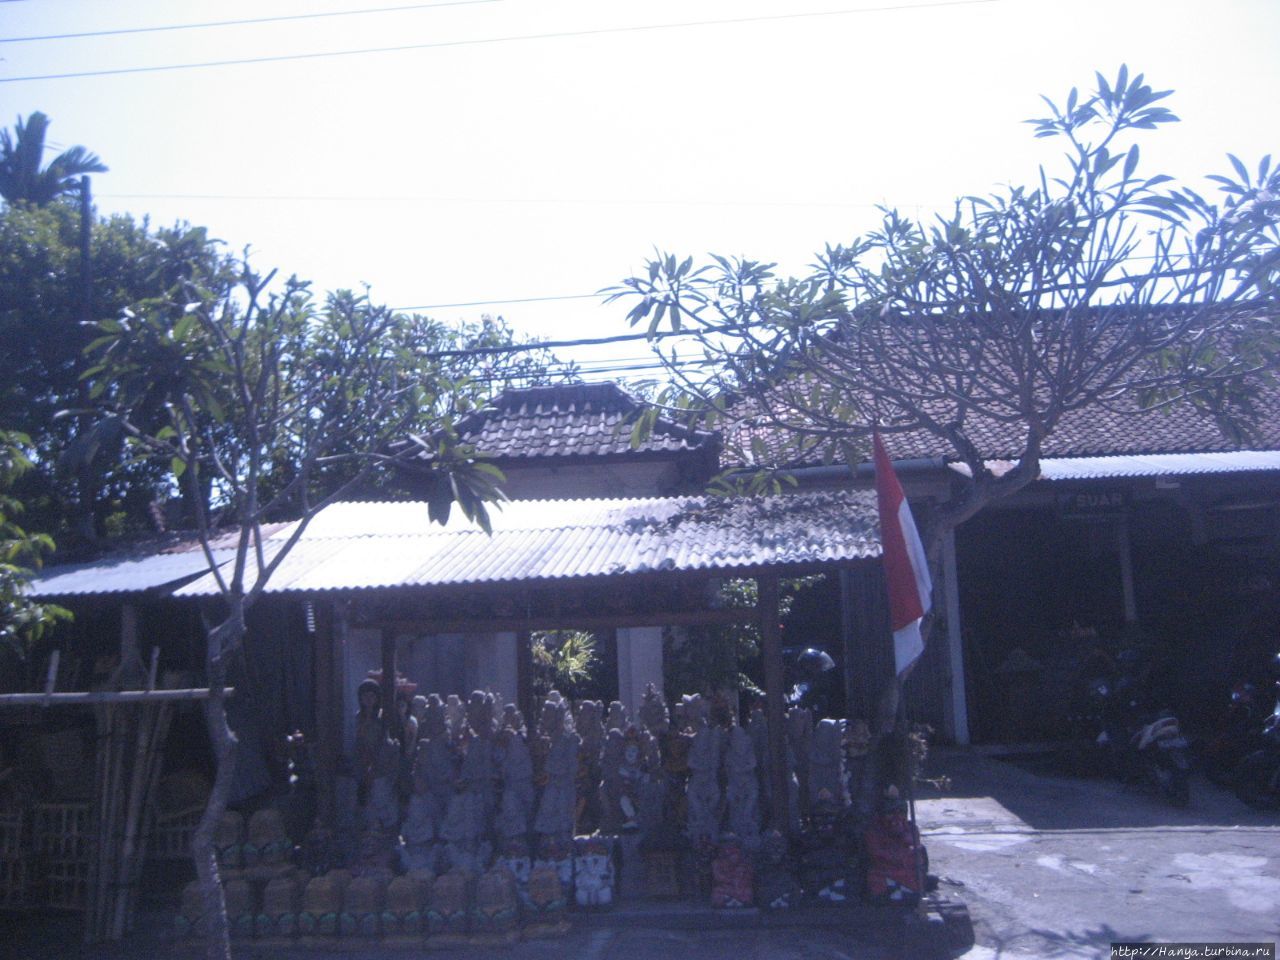 Переезд Гилиманук — Нуса-Дуа Нуса-Дуа, Индонезия